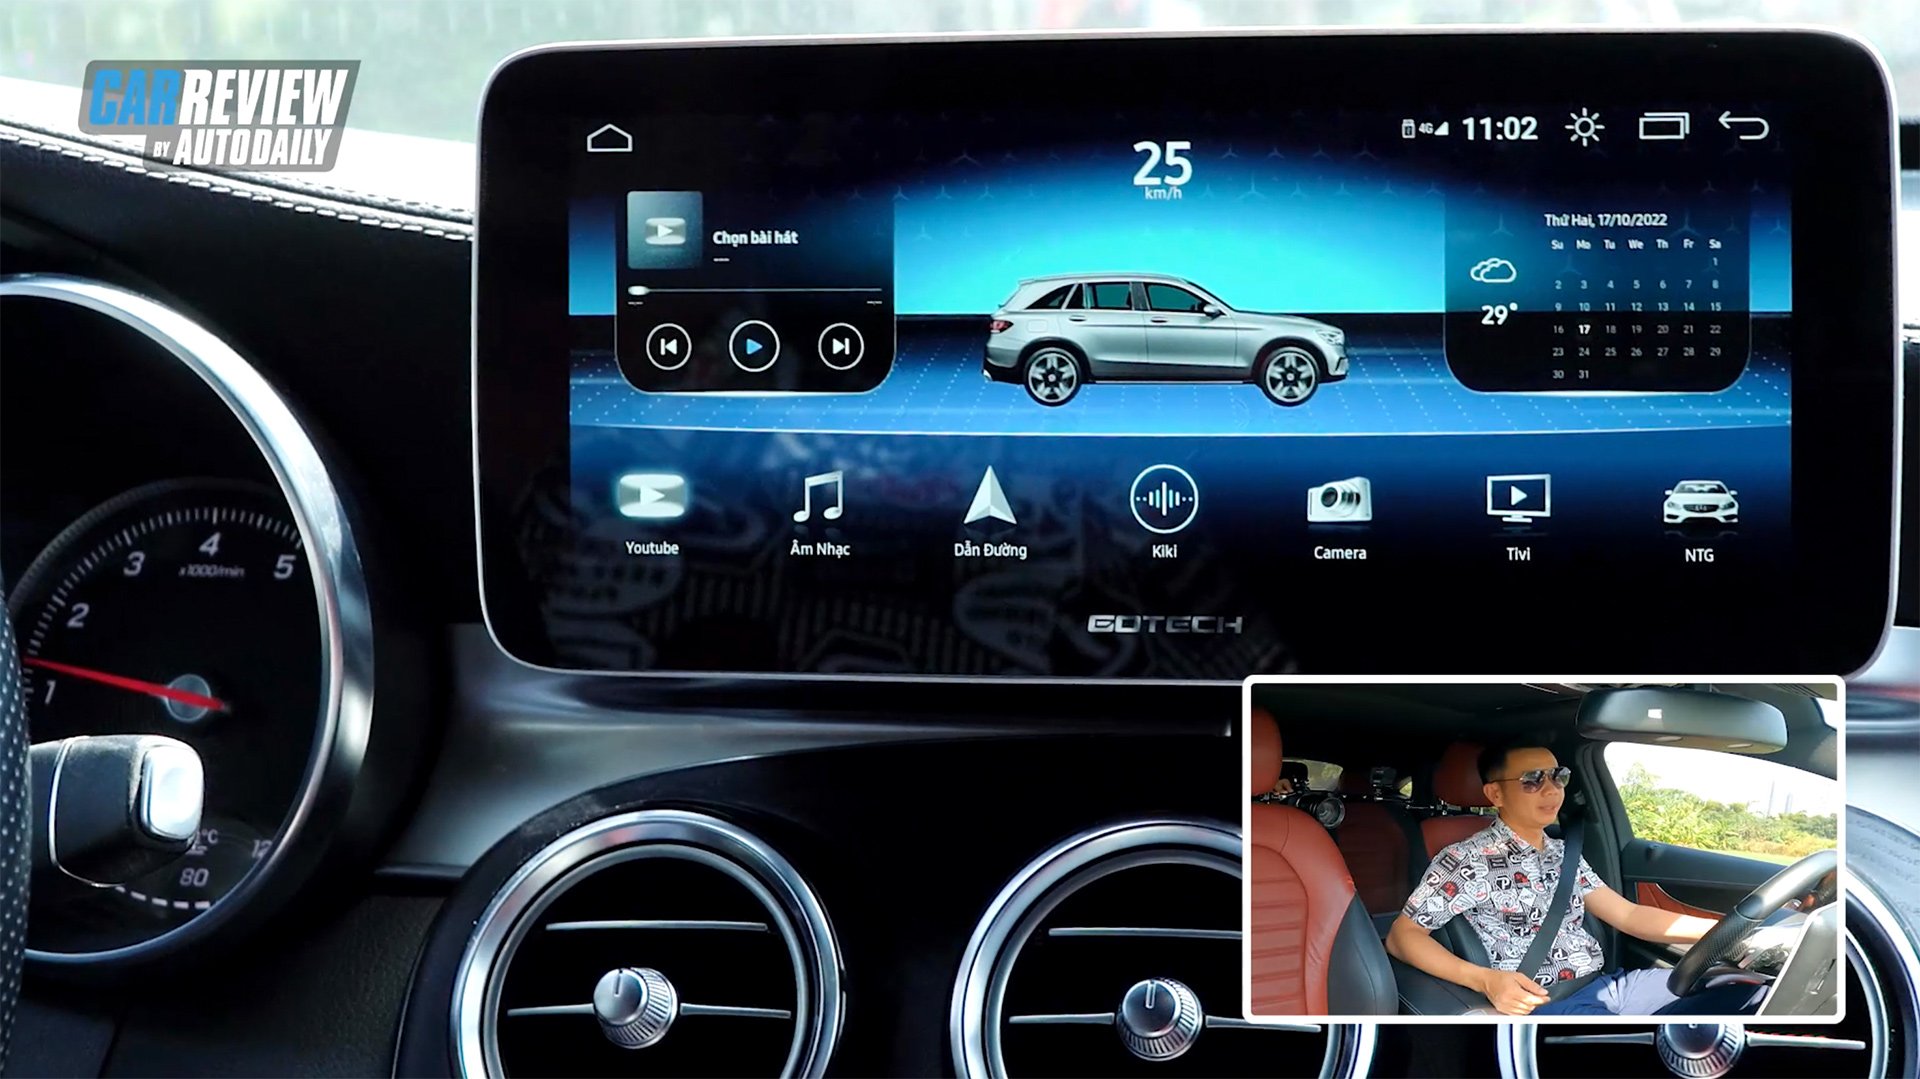 Nâng tầm công nghệ cho xe "Mẹc" với màn hình Gotech GT Mercedes